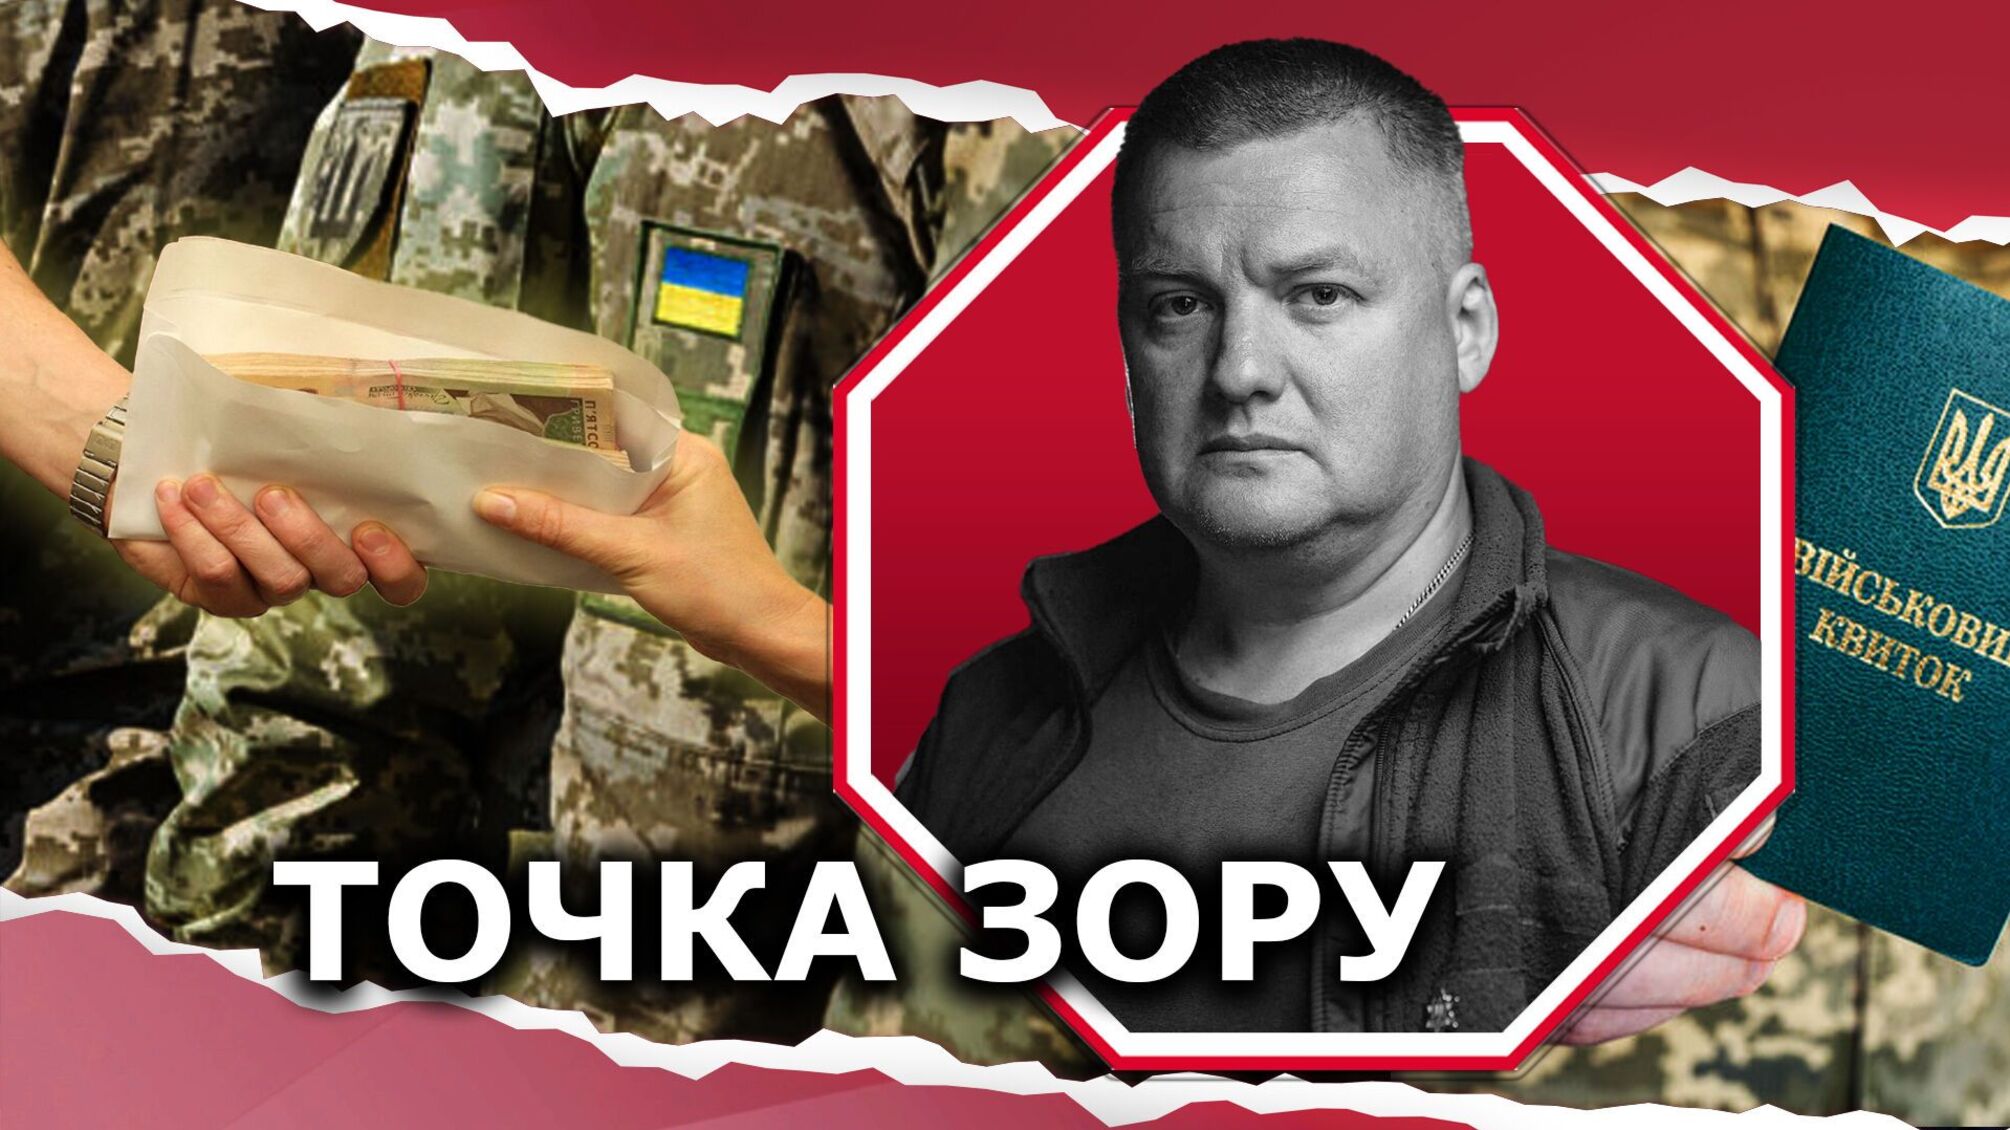 Мобілізація під загрозою знищення української нації: для боротьби з ухилянством потрібні рішучі кроки